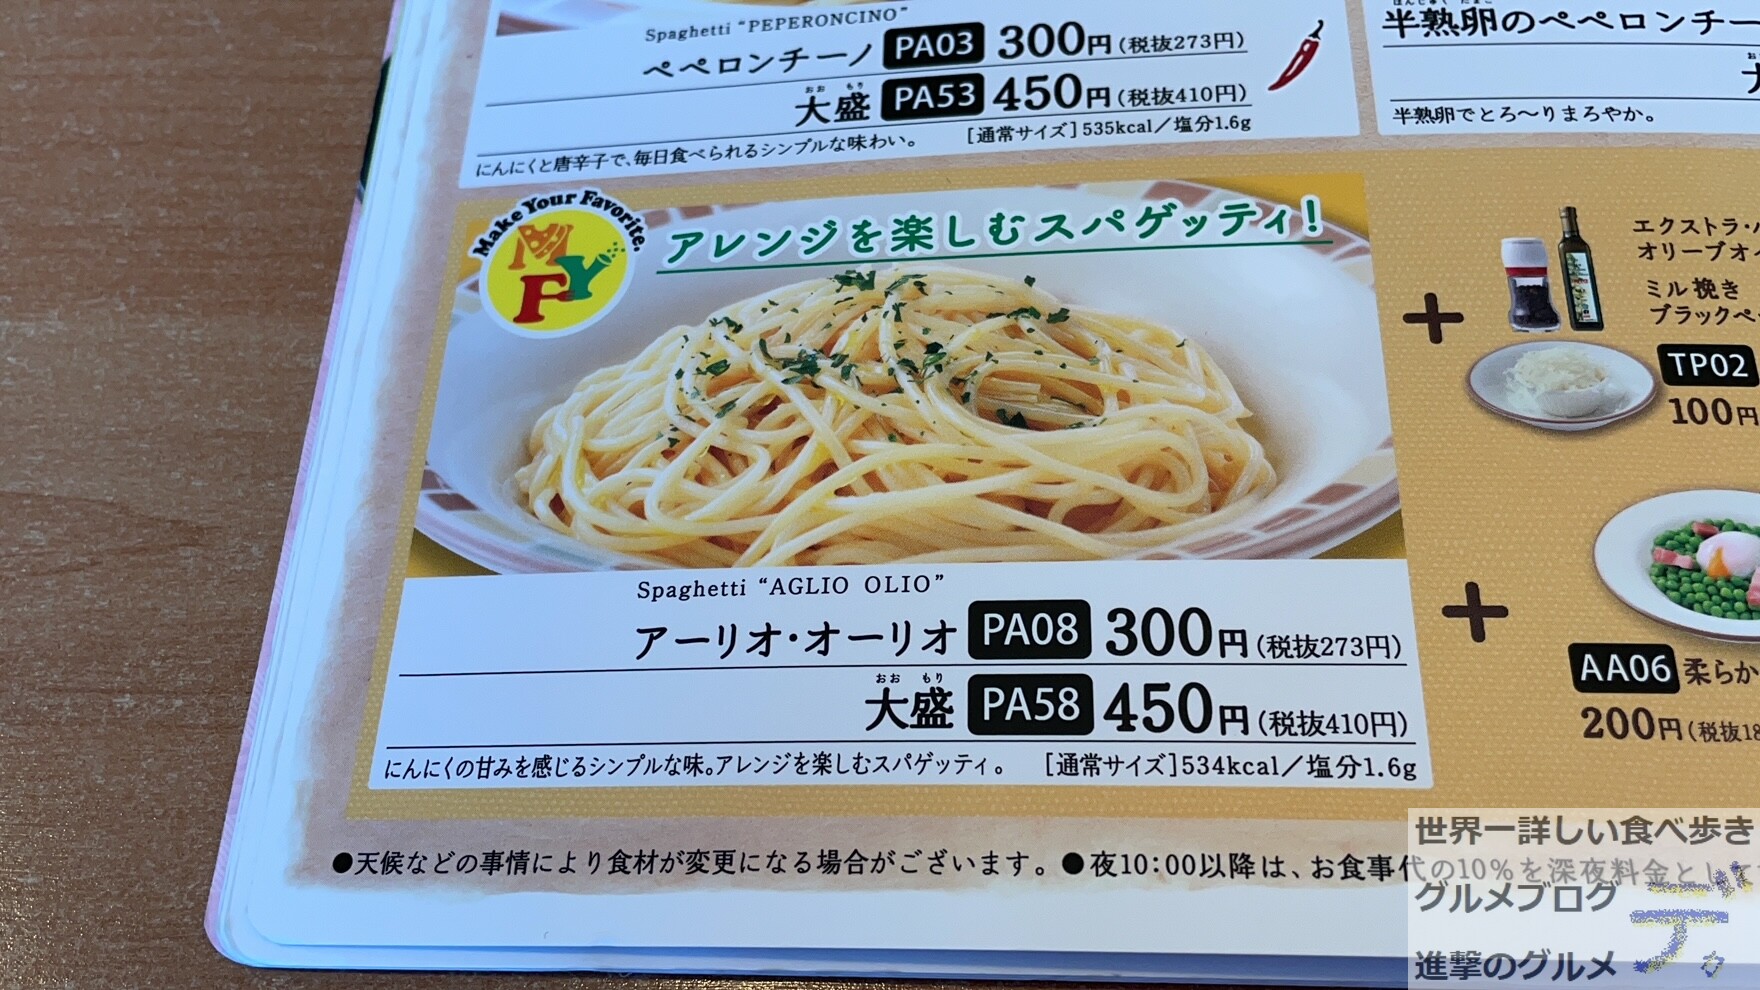 アーリオ オーリオ サイゼリヤの300円パスタを実食 進撃のグルメ Yahoo Japan クリエイターズプログラム